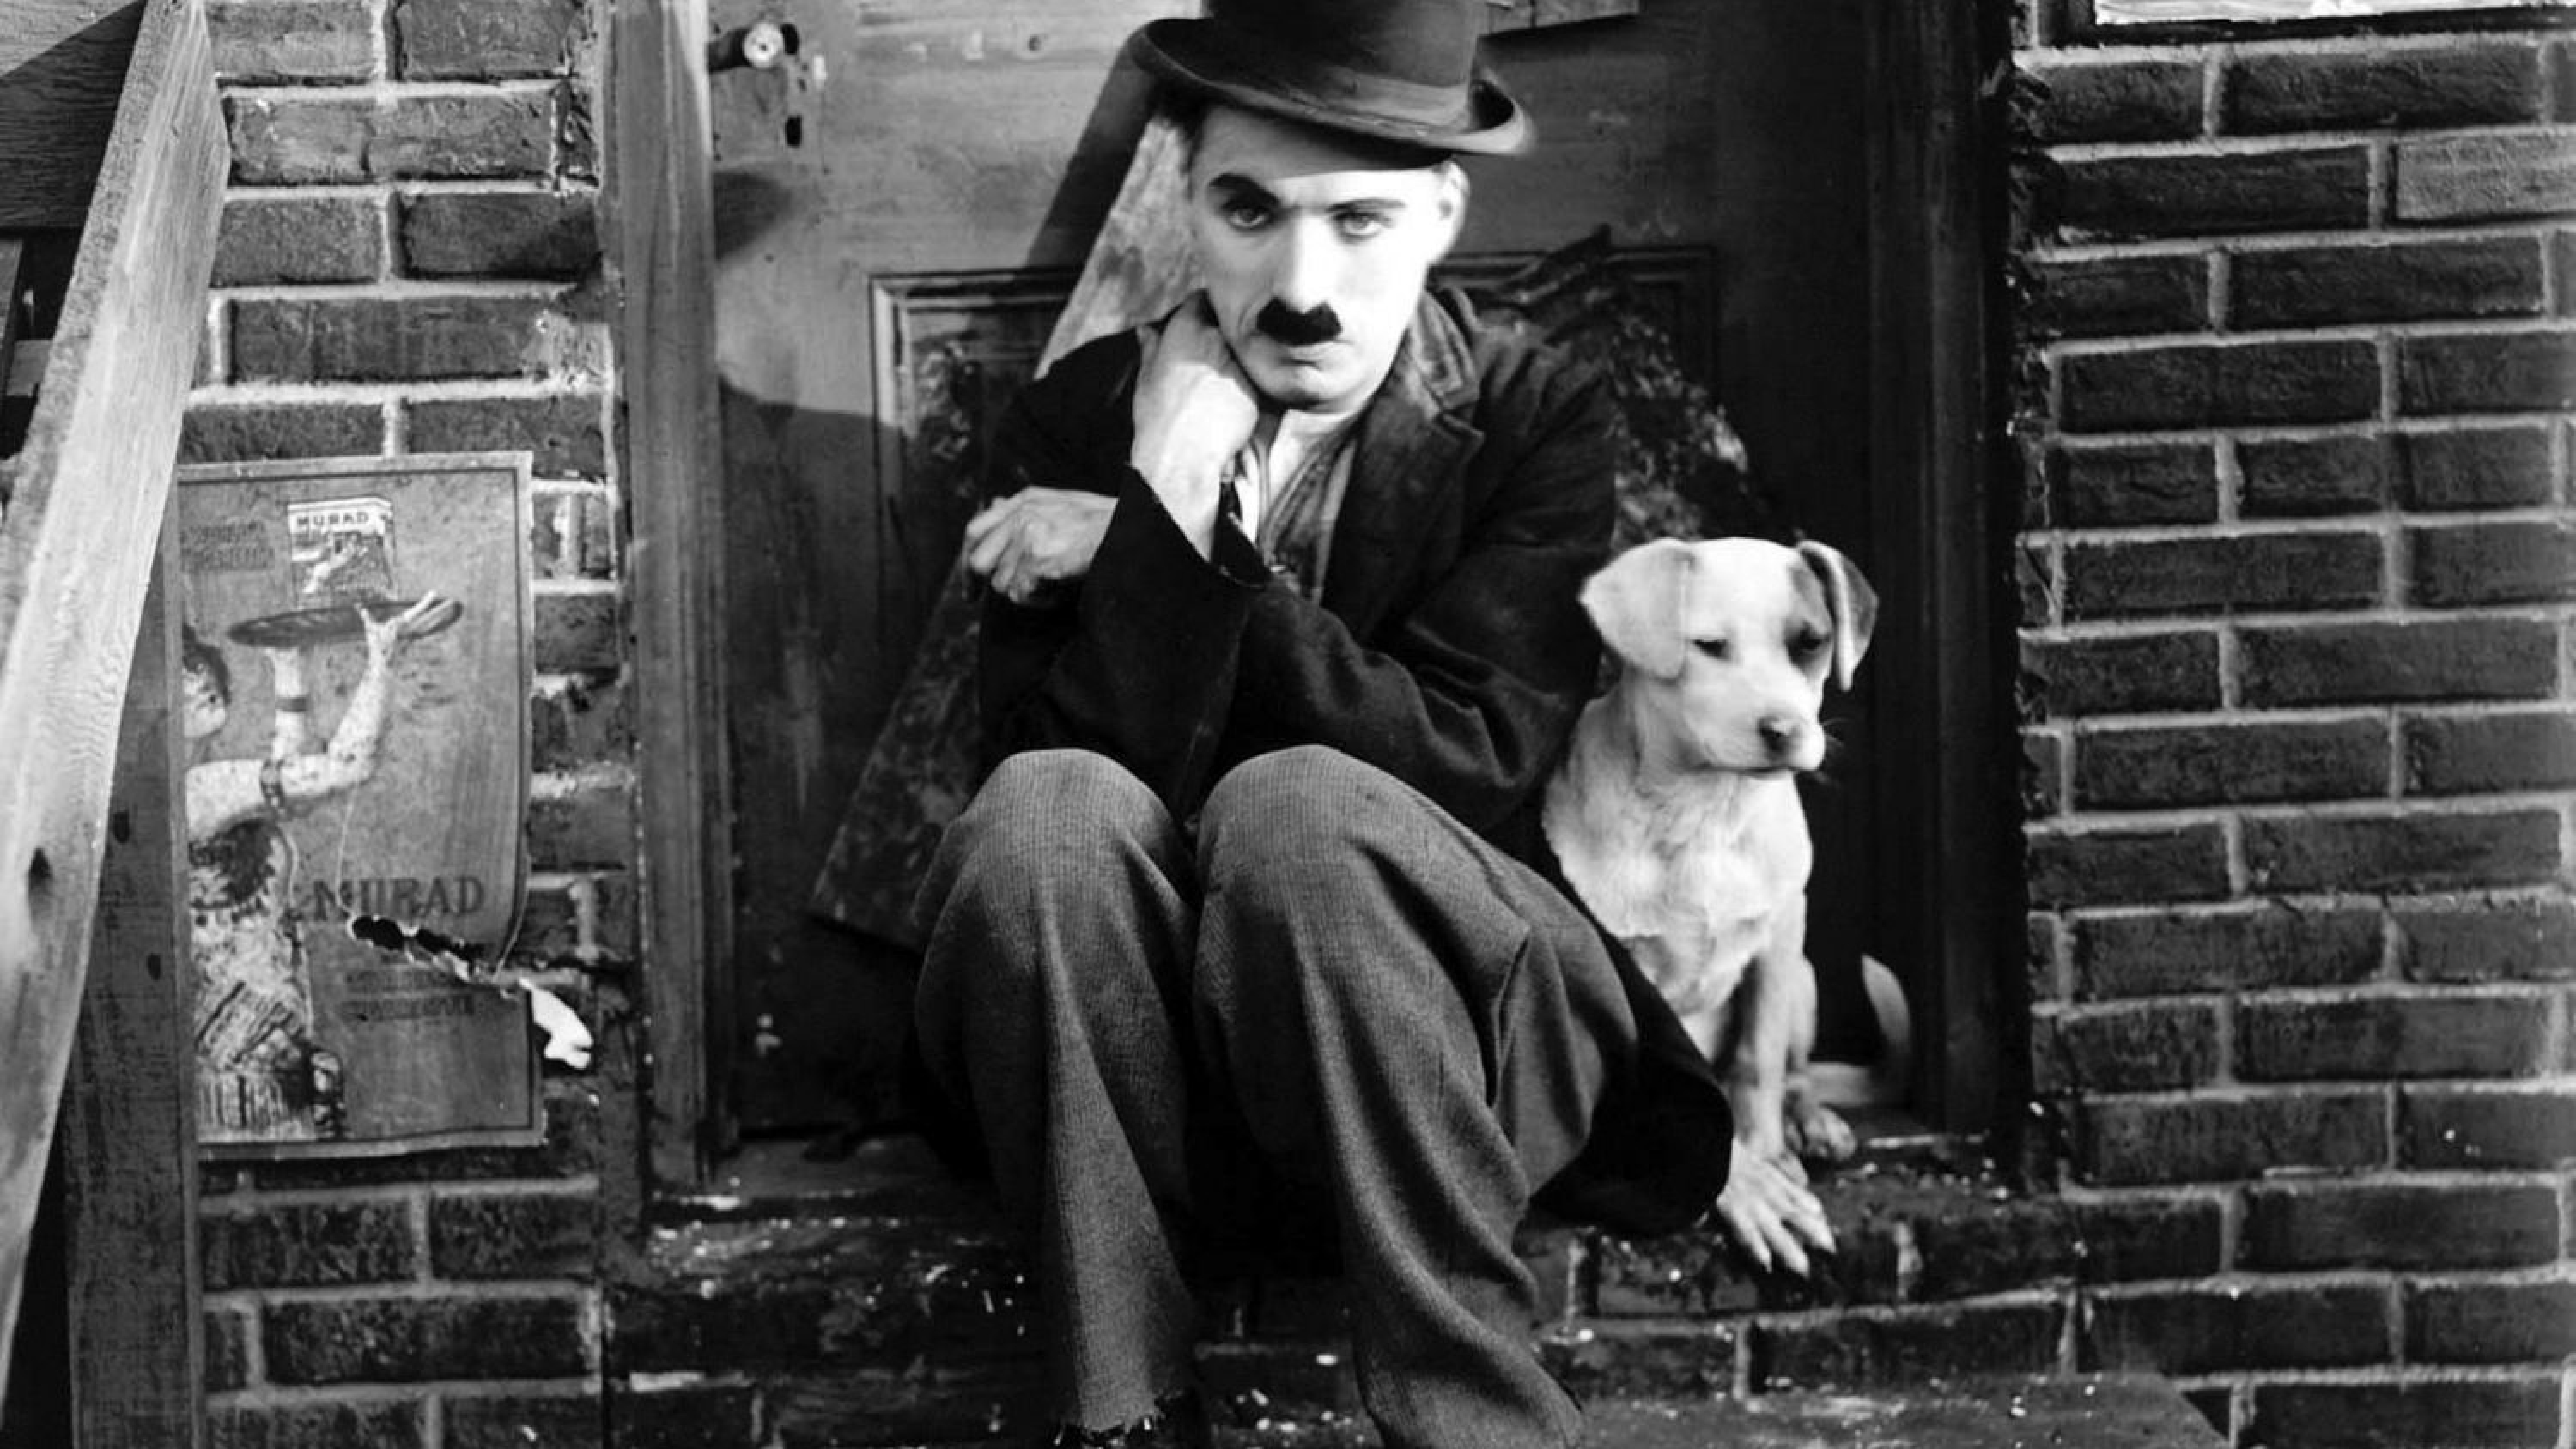 Black & White Charlie Chaplin Silent Movie Wallpaper Border - Etsy Sweden